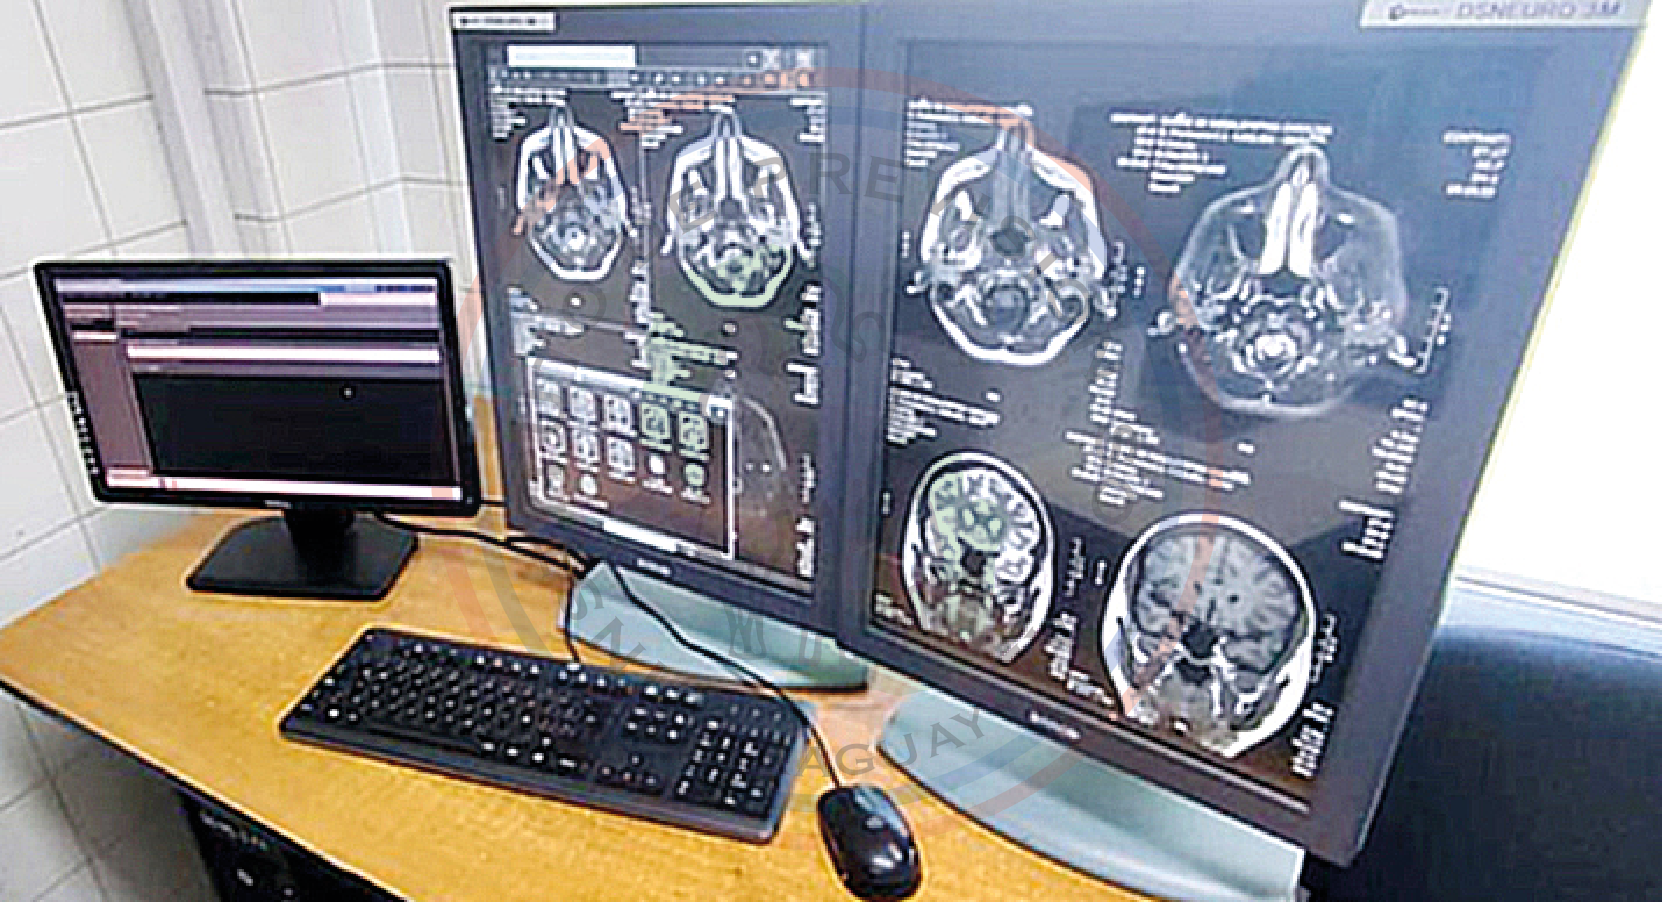 Servicio de Neurología del HCIPS inaugura Sala de Monitoreo Continuo